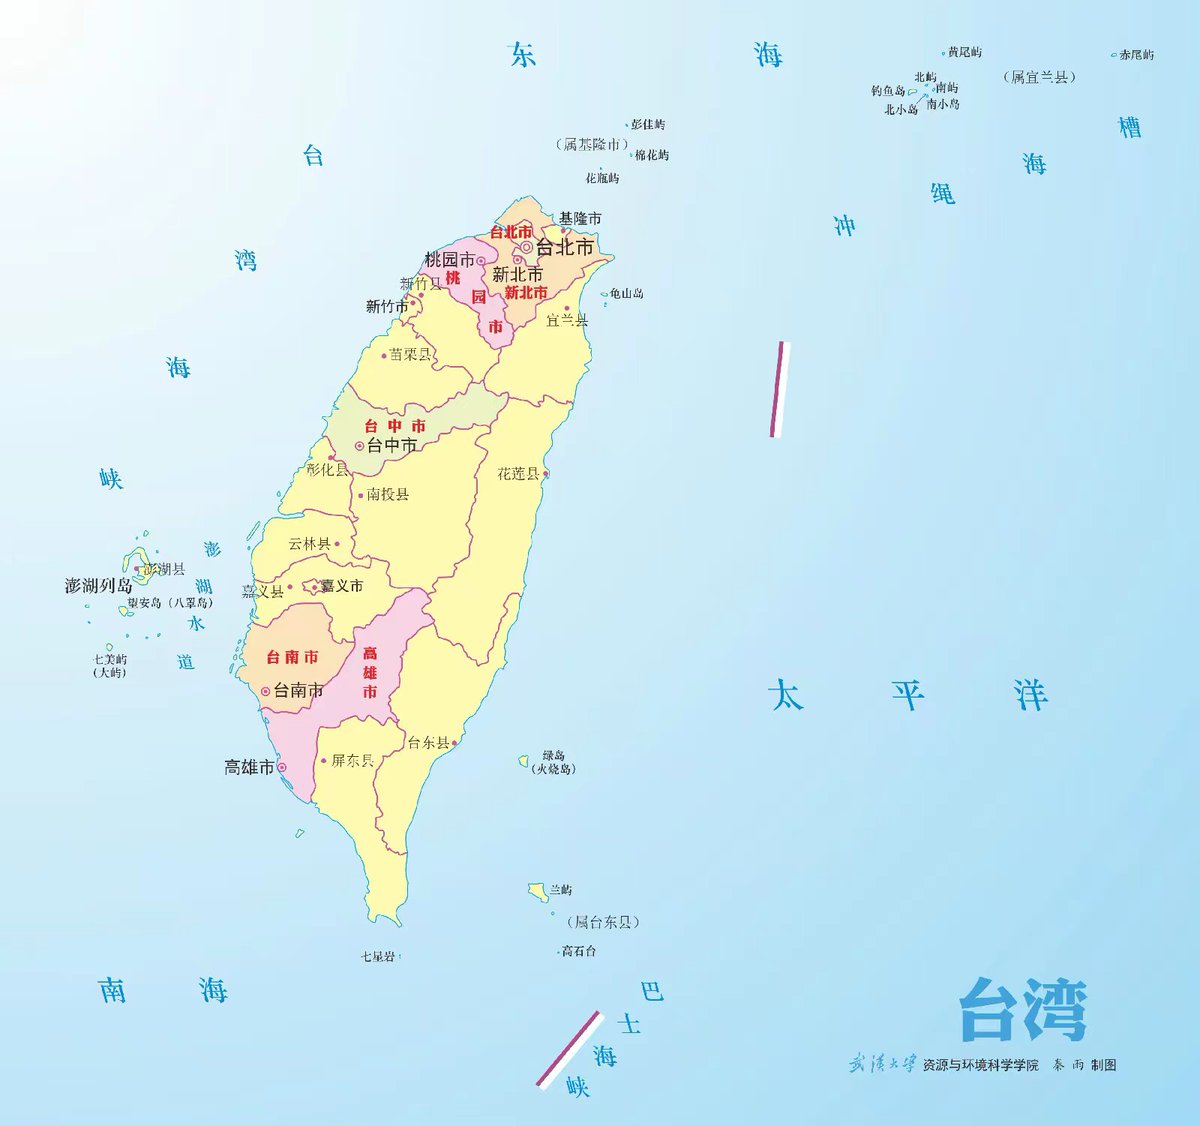 华为p60art摄像头海岛型设计，和台湾省轮廓一样。
而更深的寓意是:5G、麒麟、台湾，都会都要回归！

这格局👍🏻👍🏻👍🏻
Huawei's Innovation，The return of Taiwan